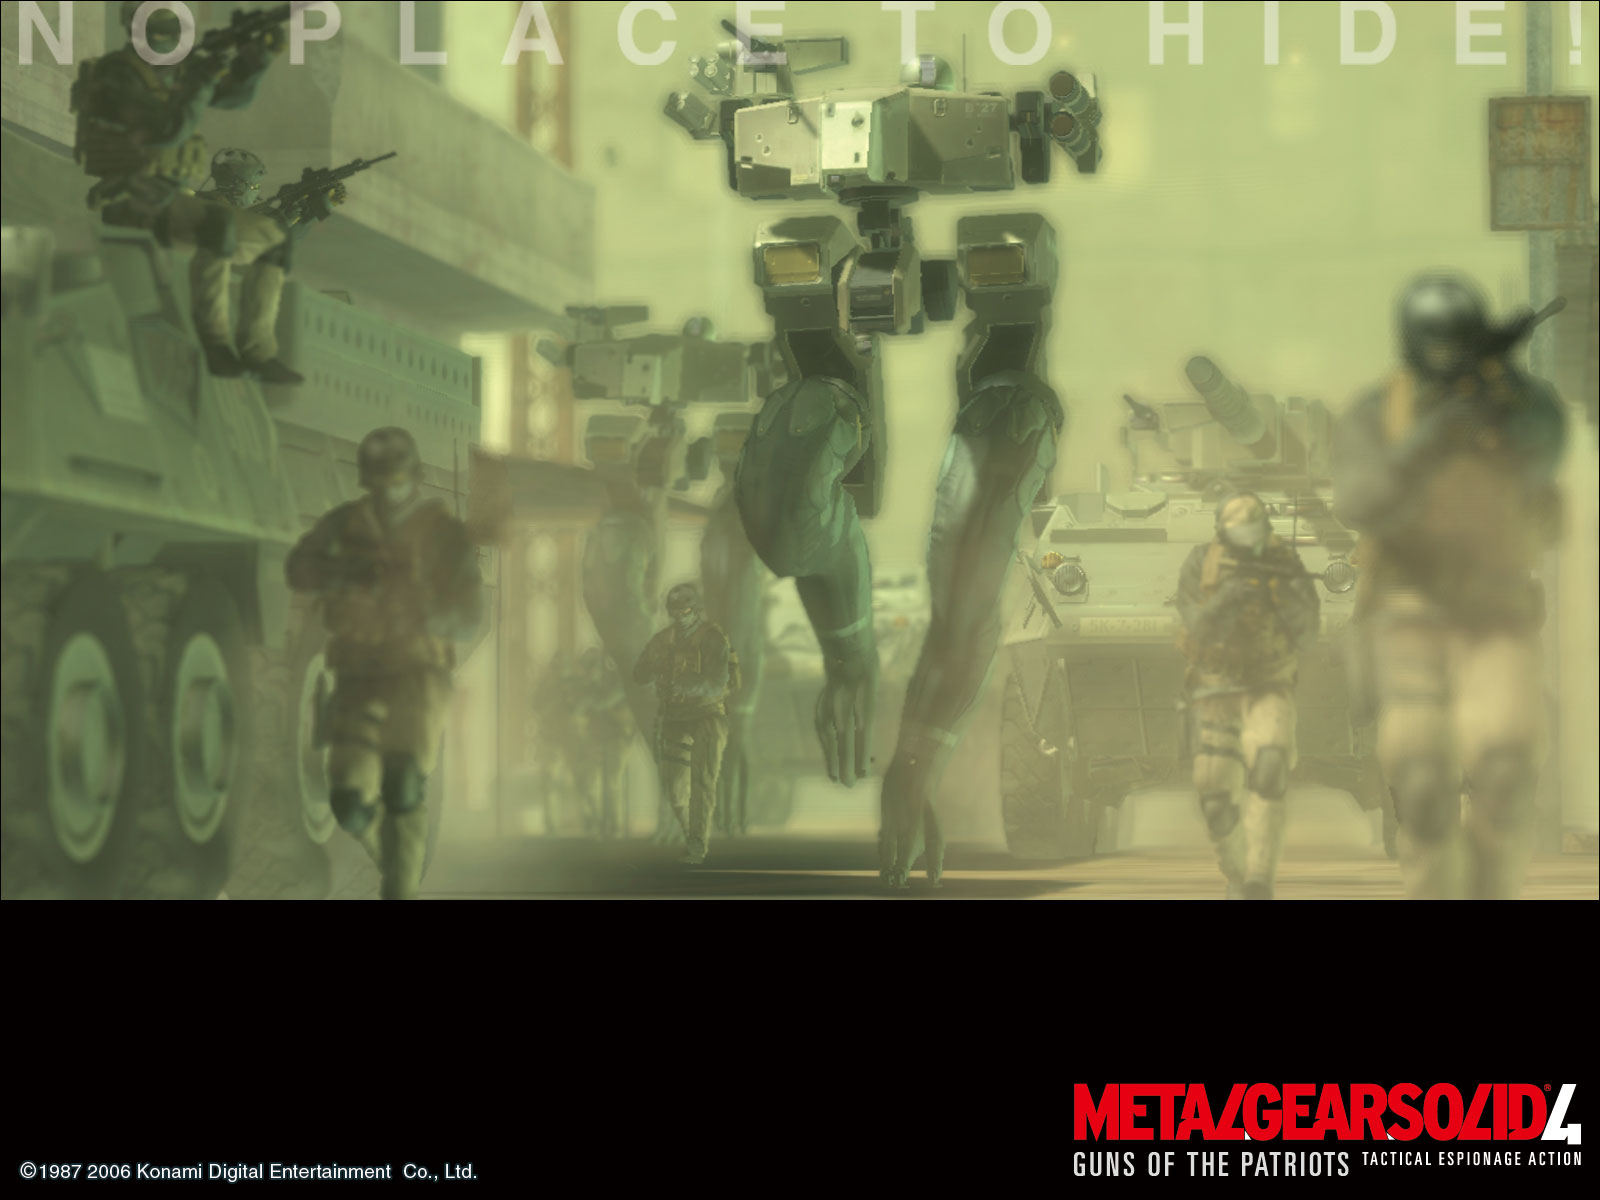 Metal Gear Solid 4 Wallpaper | 1600x1200 | ID:3636